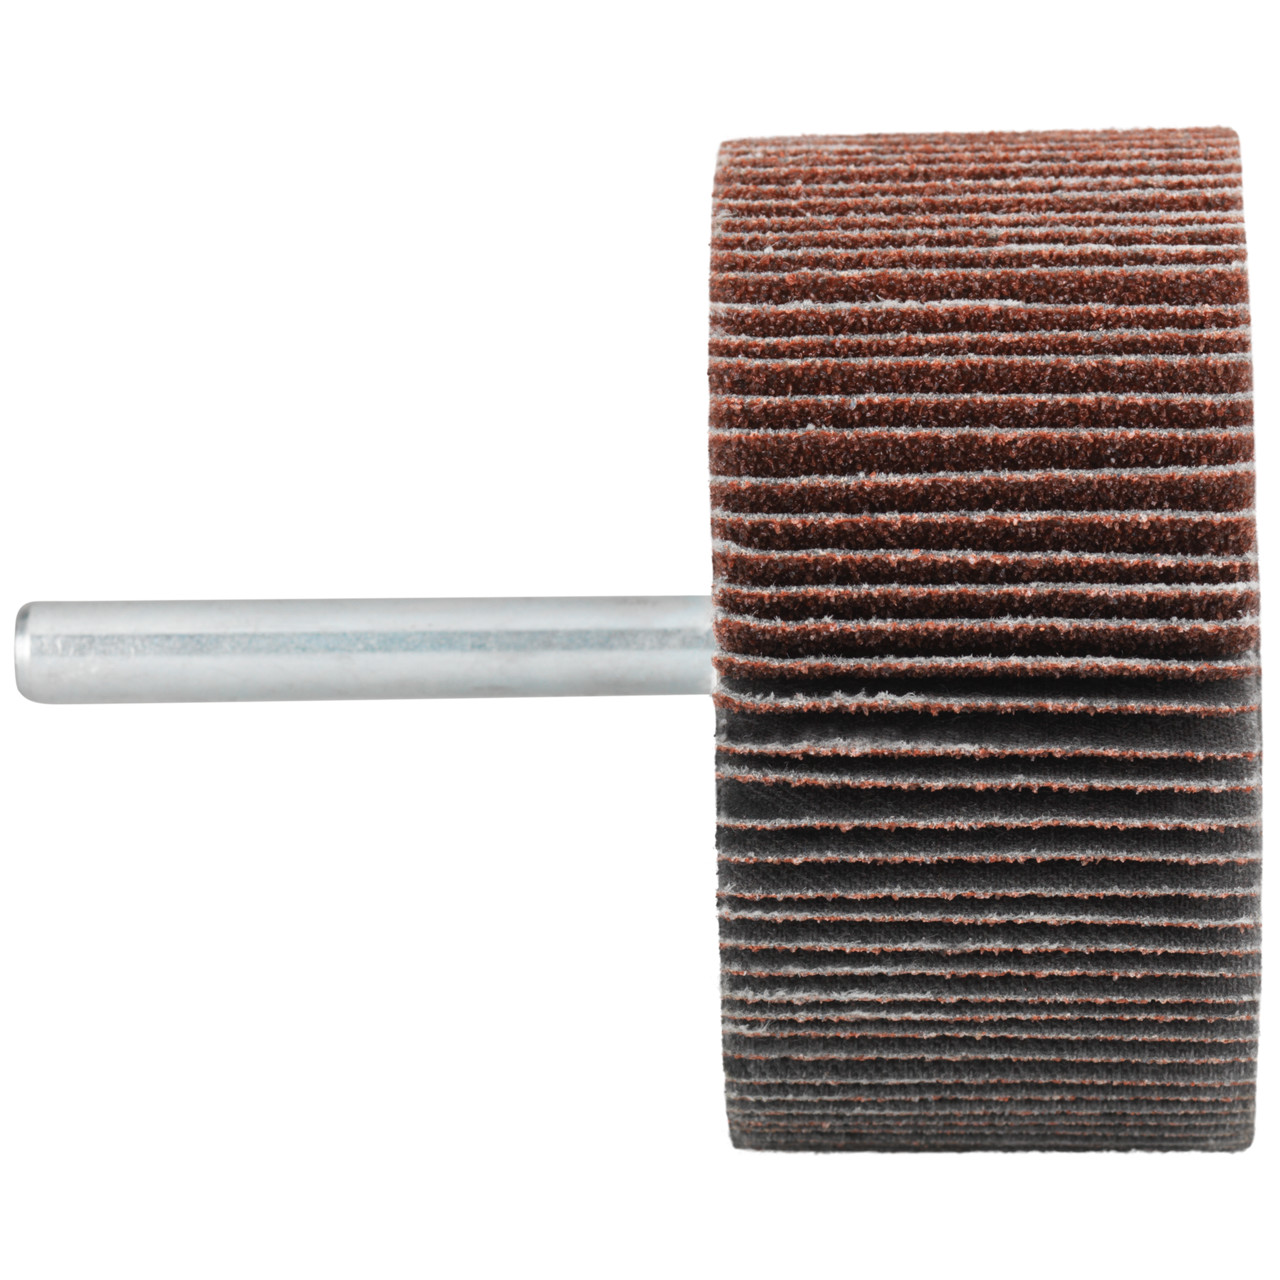 Tyrolit A-P01 C X Pennen DxD 60x40 Voor staal, roestvast staal en non-ferrometalen, P120, vorm: 52LA, Art. 816967